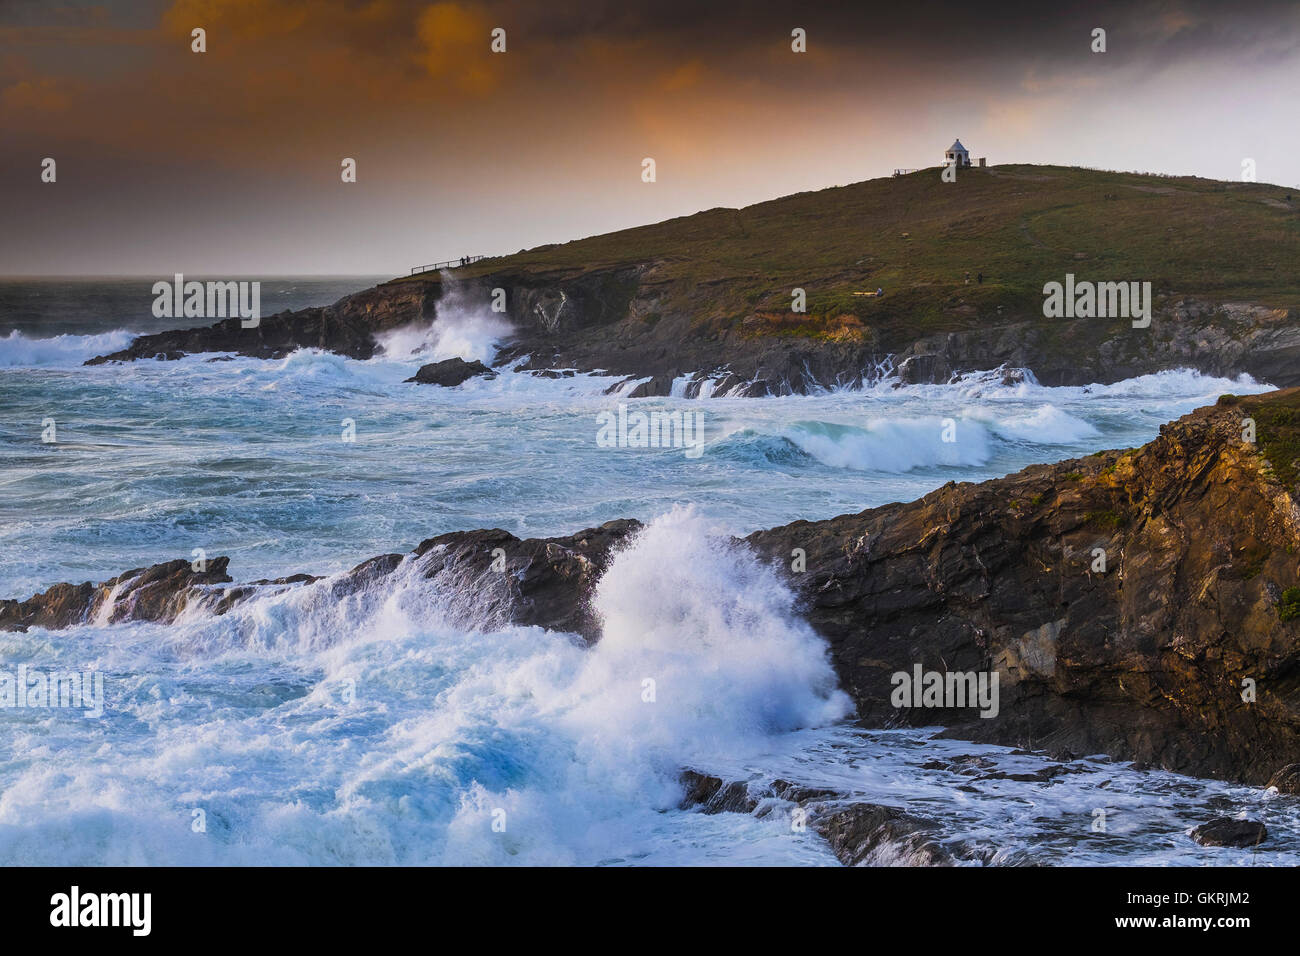 Gale force Winde und wilde Wetter fahren große Wellen auf den Felsen am Towan Landzunge in Newquay, Cornwall. Stockfoto